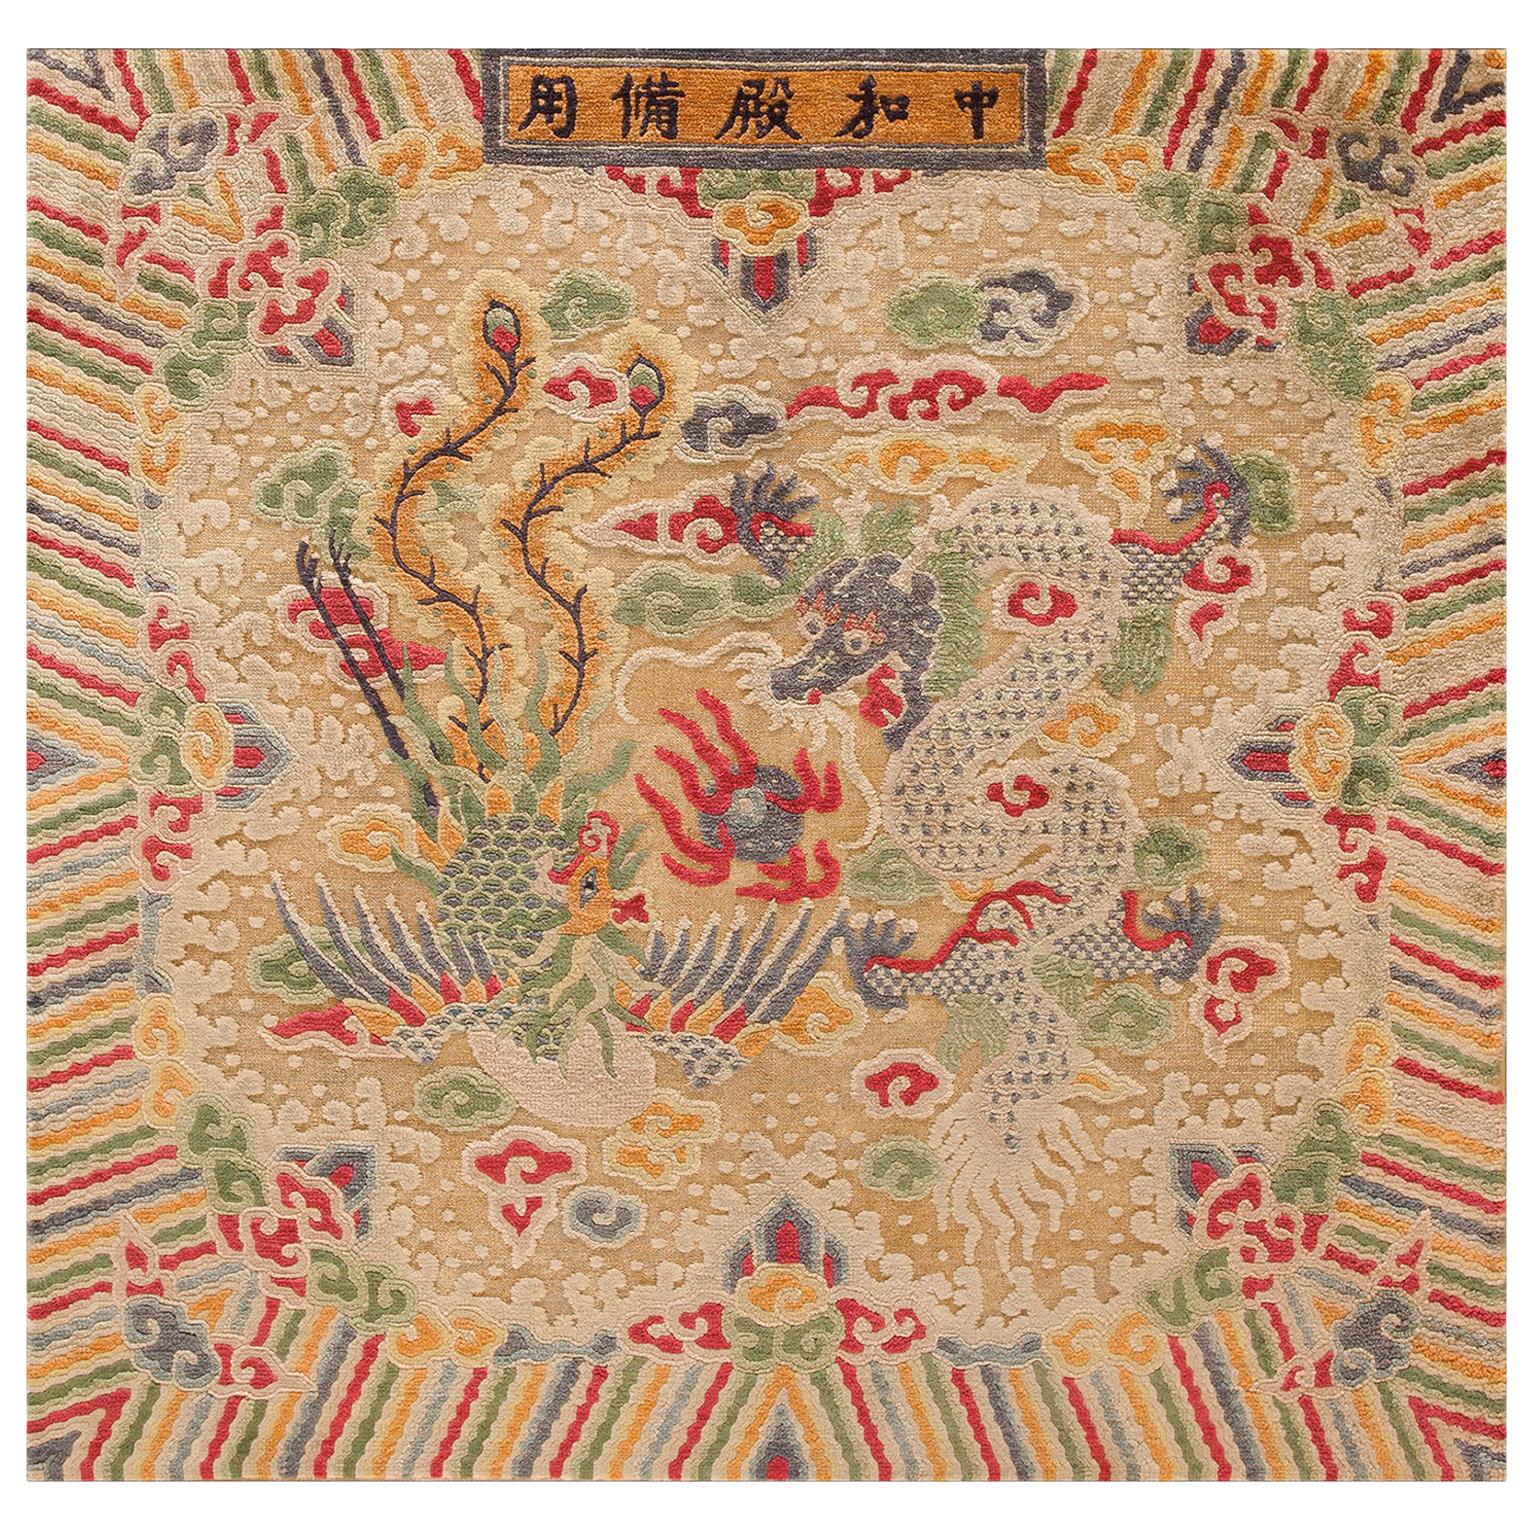 Tapis chinois du début du 20e siècle en soie et fil métallique (4' x 4'-122 x 122 cm)